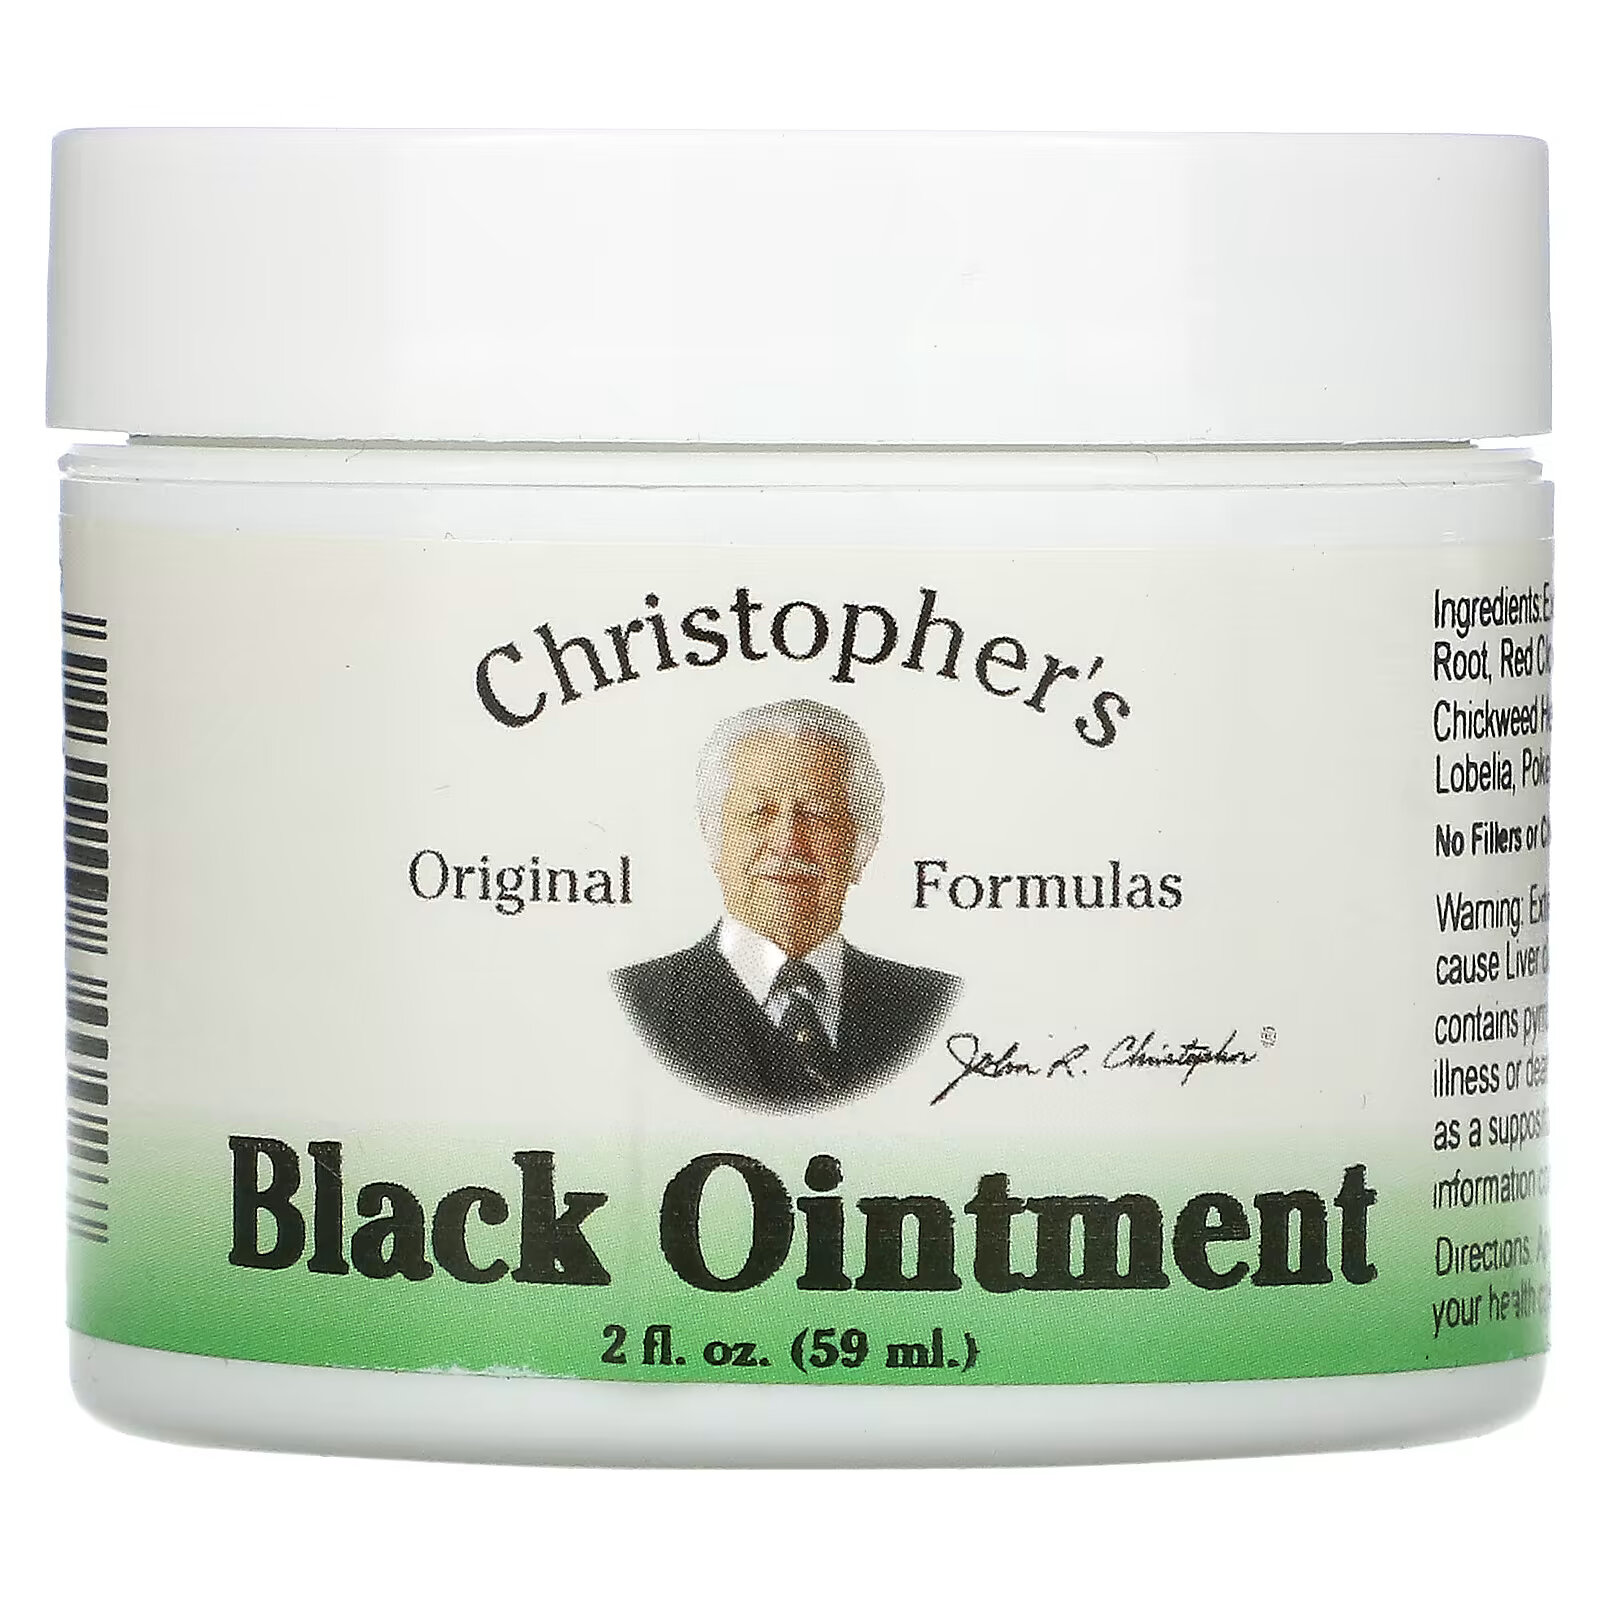 Christopher's Original Formulas, Black Ointment, противовоспалительная, 59 мл (2 жидкие унции) формула sinus plus 2 жидкие унции 59 мл christopher s original formulas